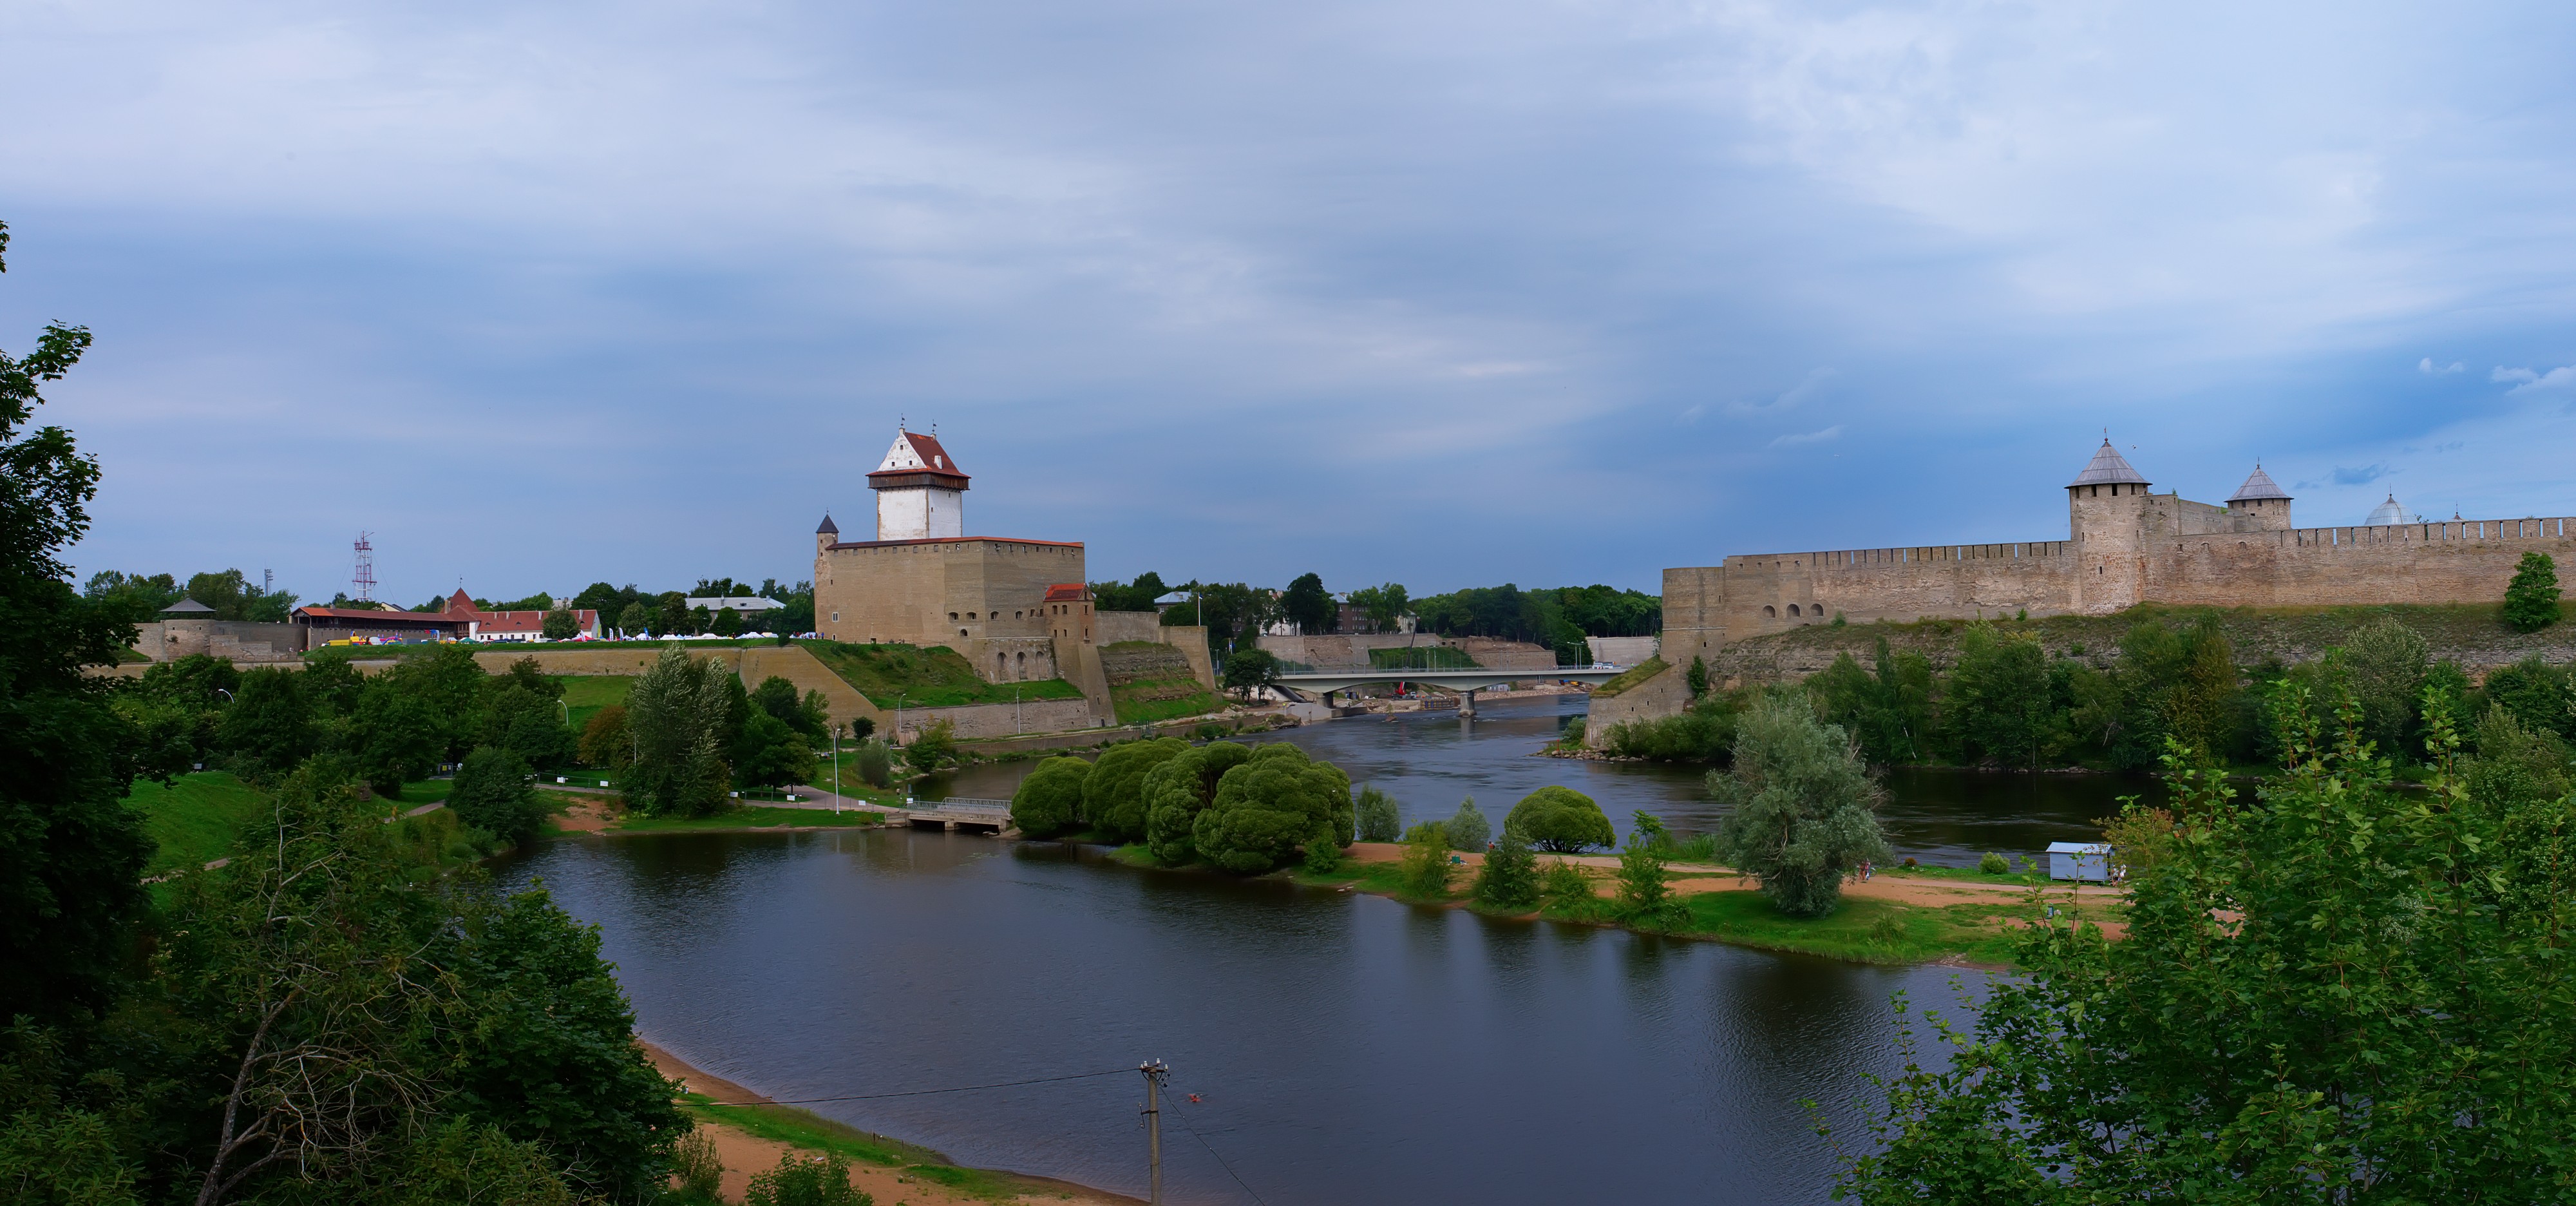 Ivangorod Fortress opposite the Narva Hermann Castle 2